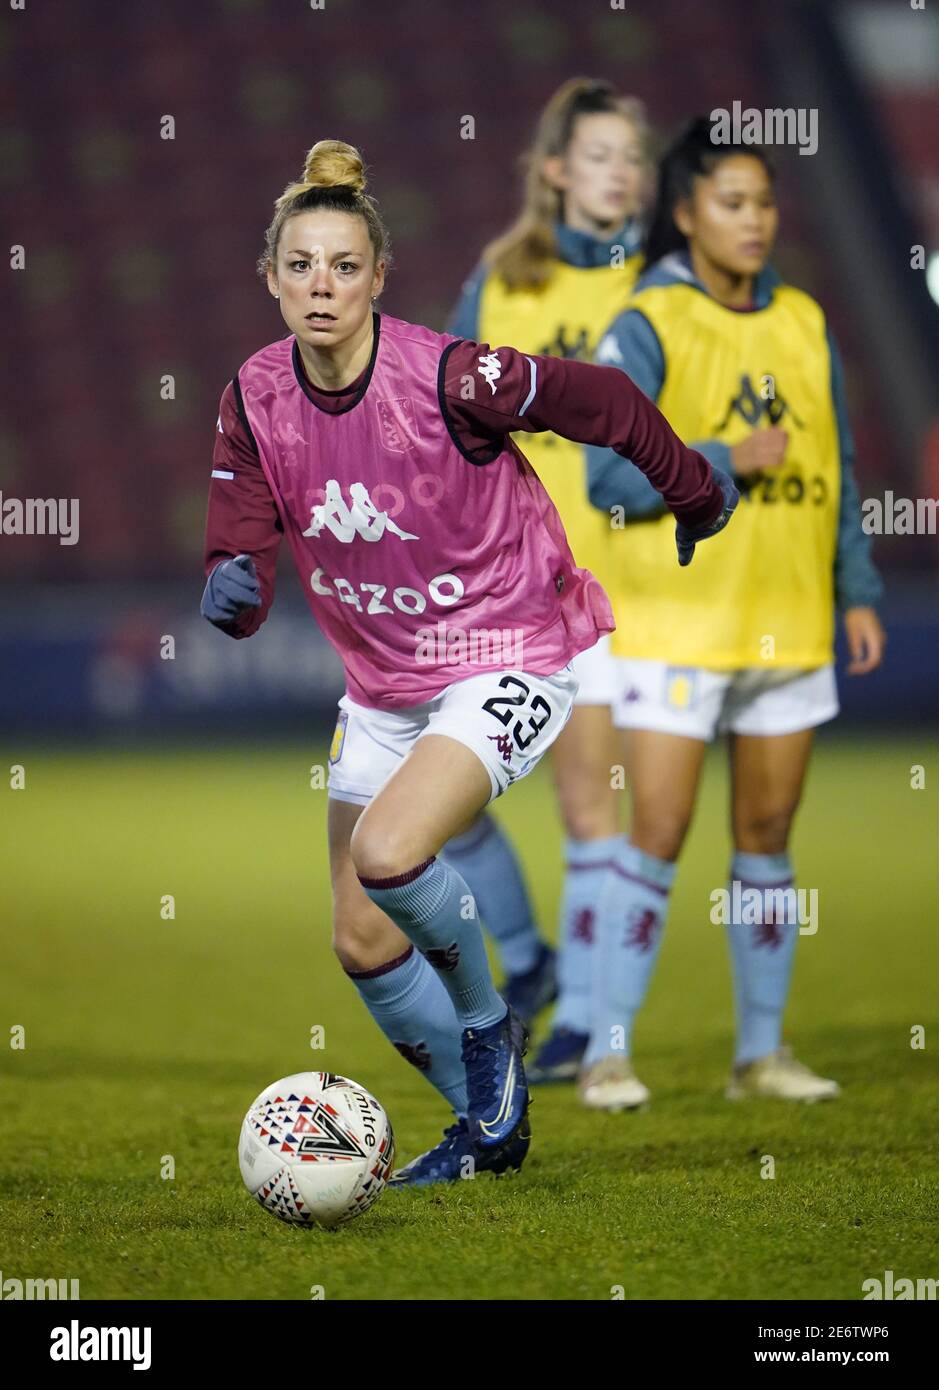 Nadine Hanssen von Aston Villa erwärmt sich vor dem FA Women's Super League Spiel im Banks's Stadium, Walsall. Bilddatum: Mittwoch, 27. Januar 2021. Stockfoto